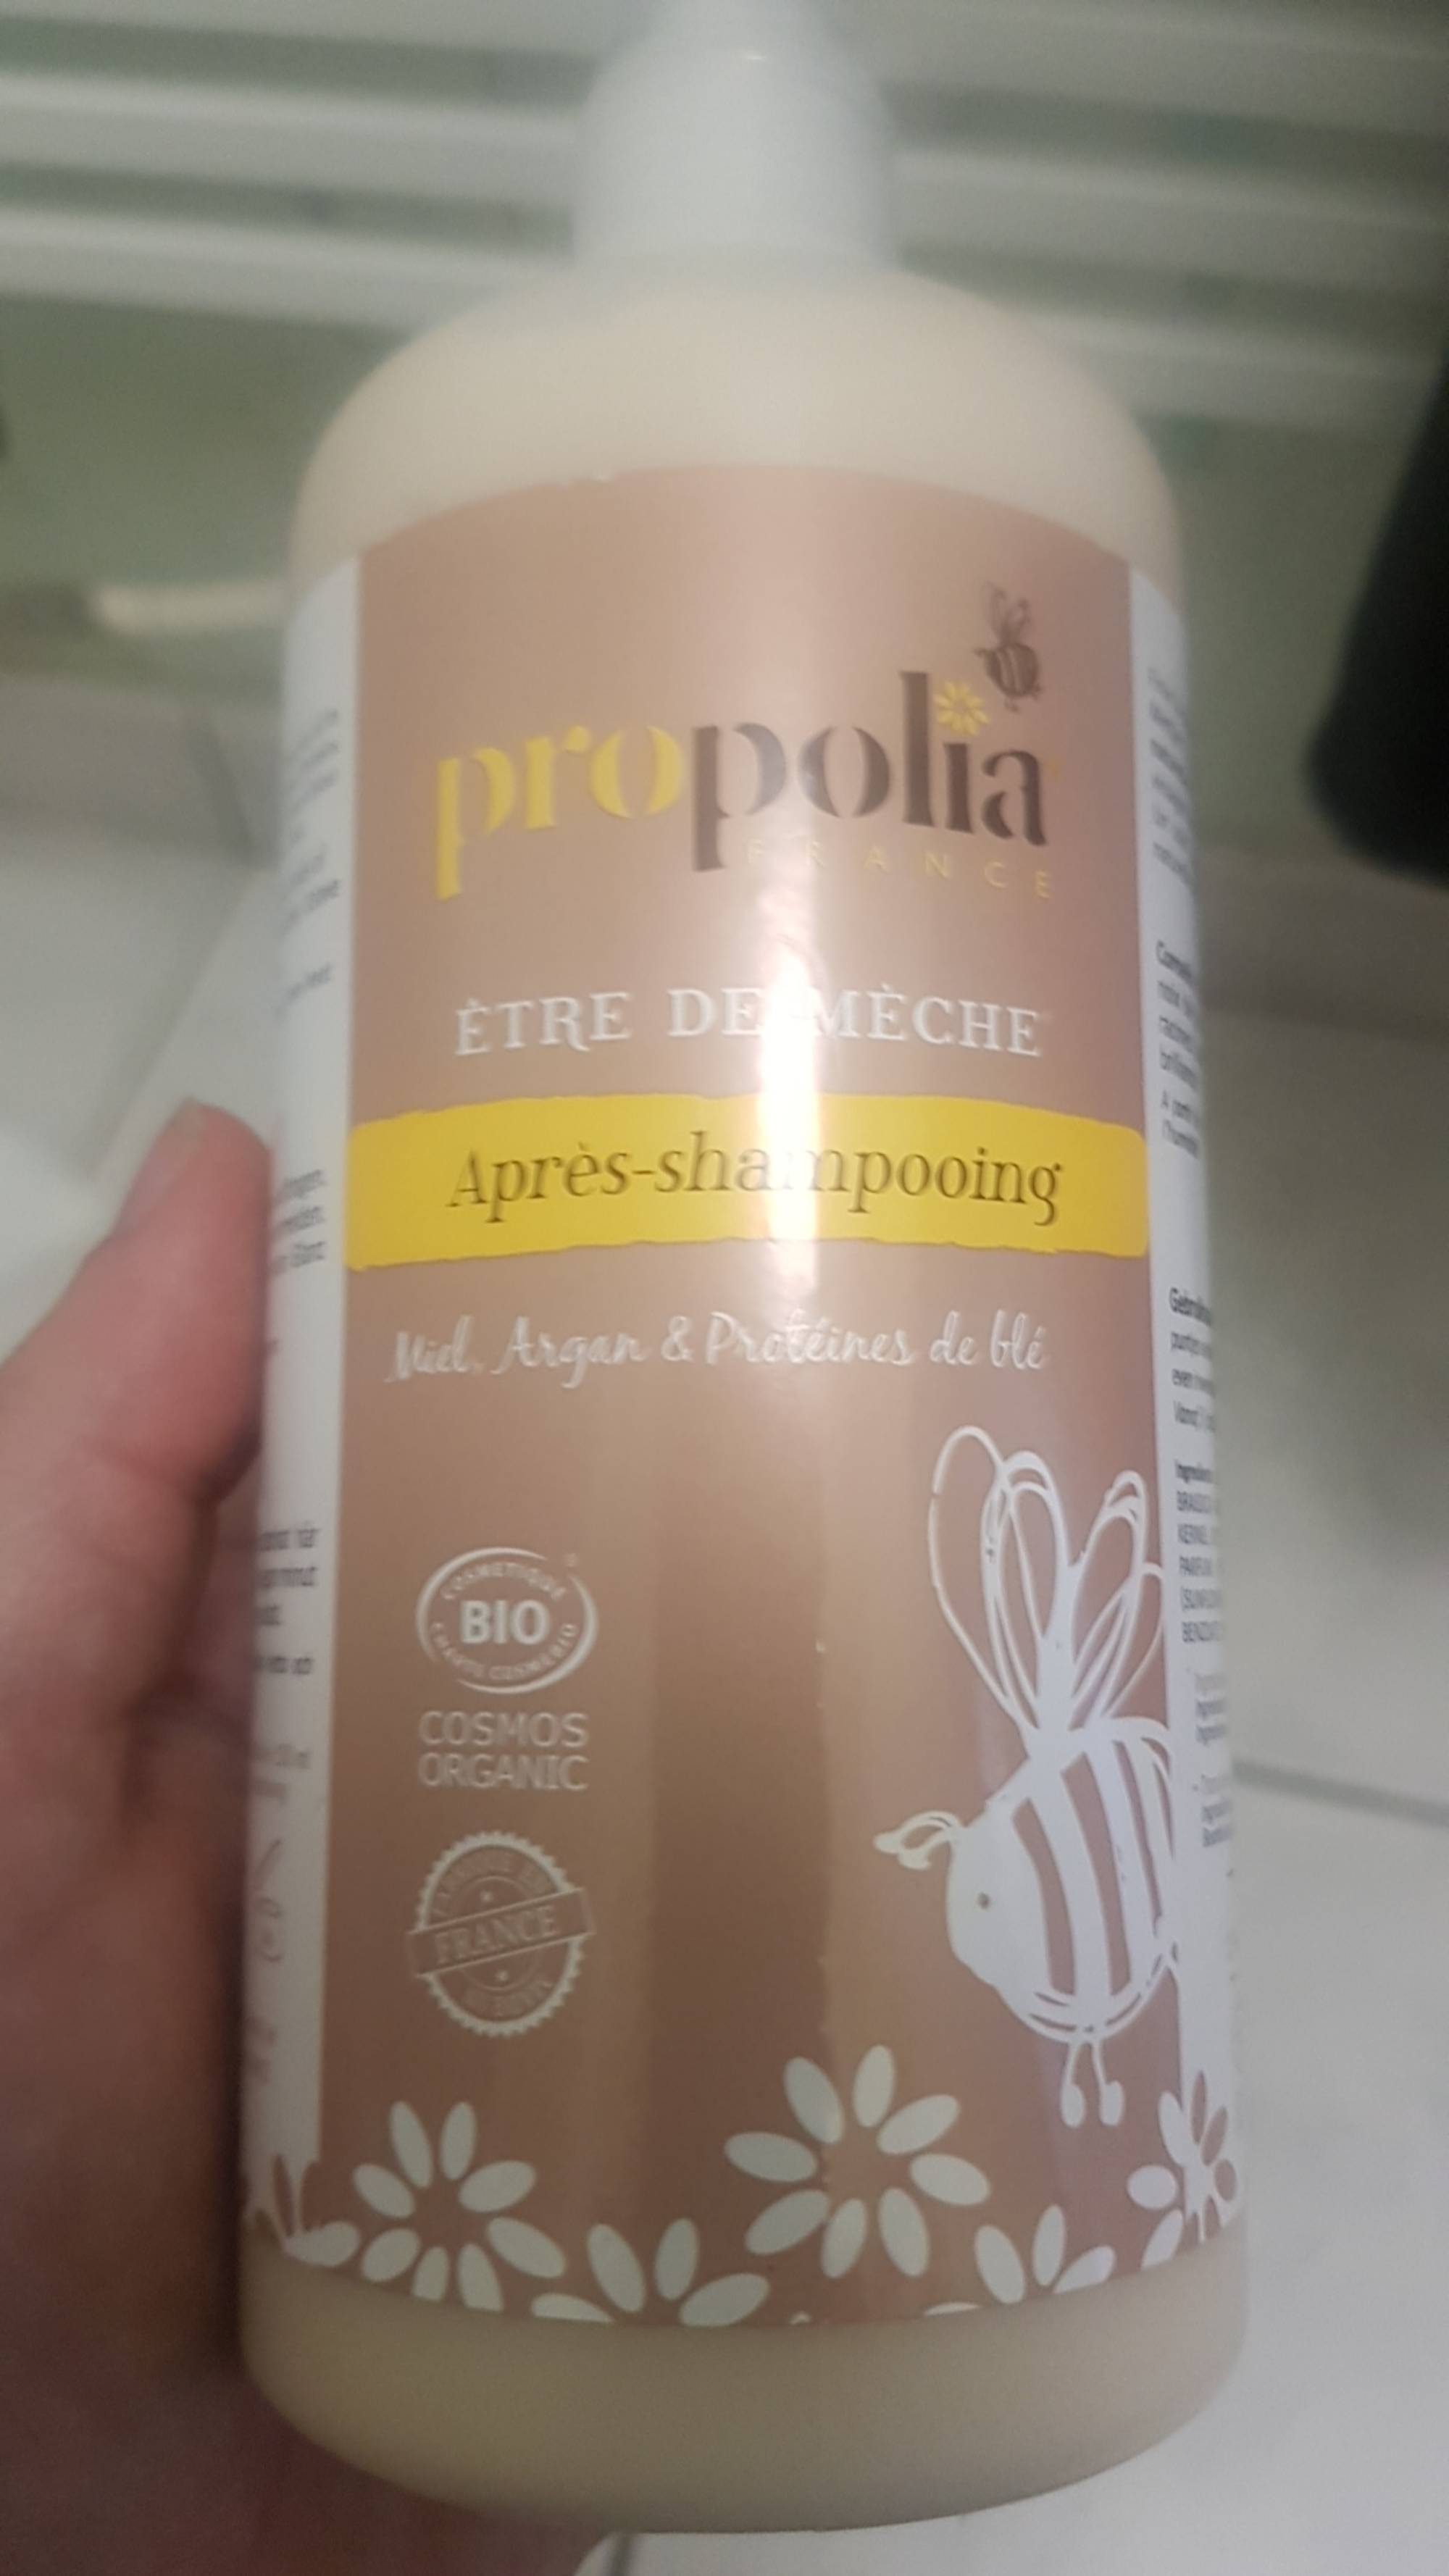 PROPOLIA - Etre de mèche - Après-Shampooing